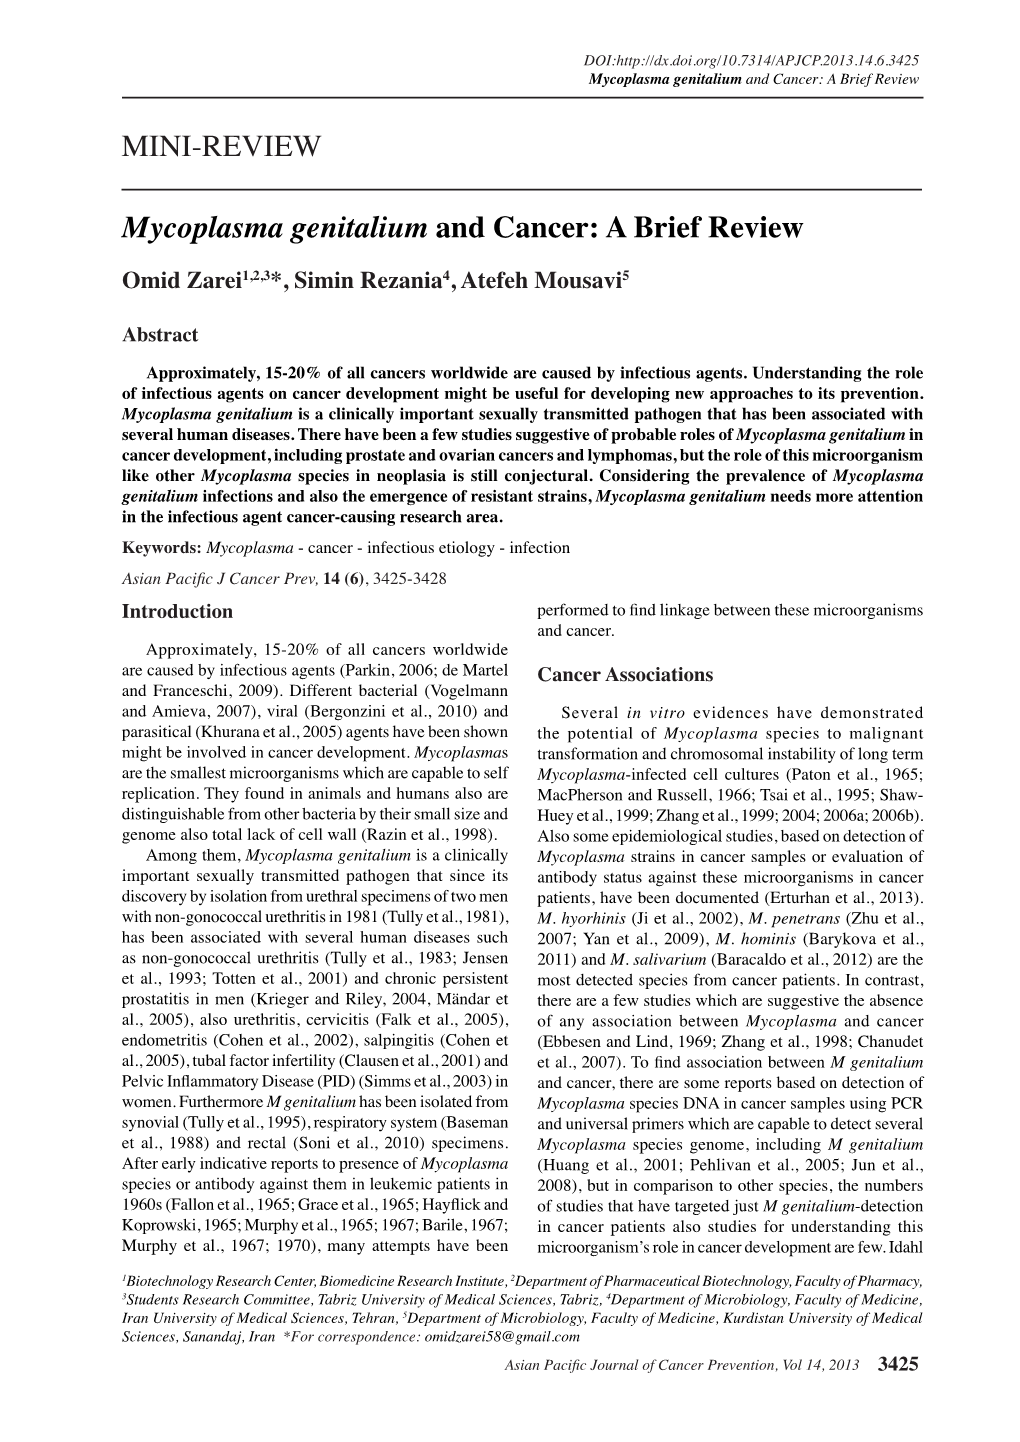 Mycoplasma Genitalium and Cancer: a Brief Review